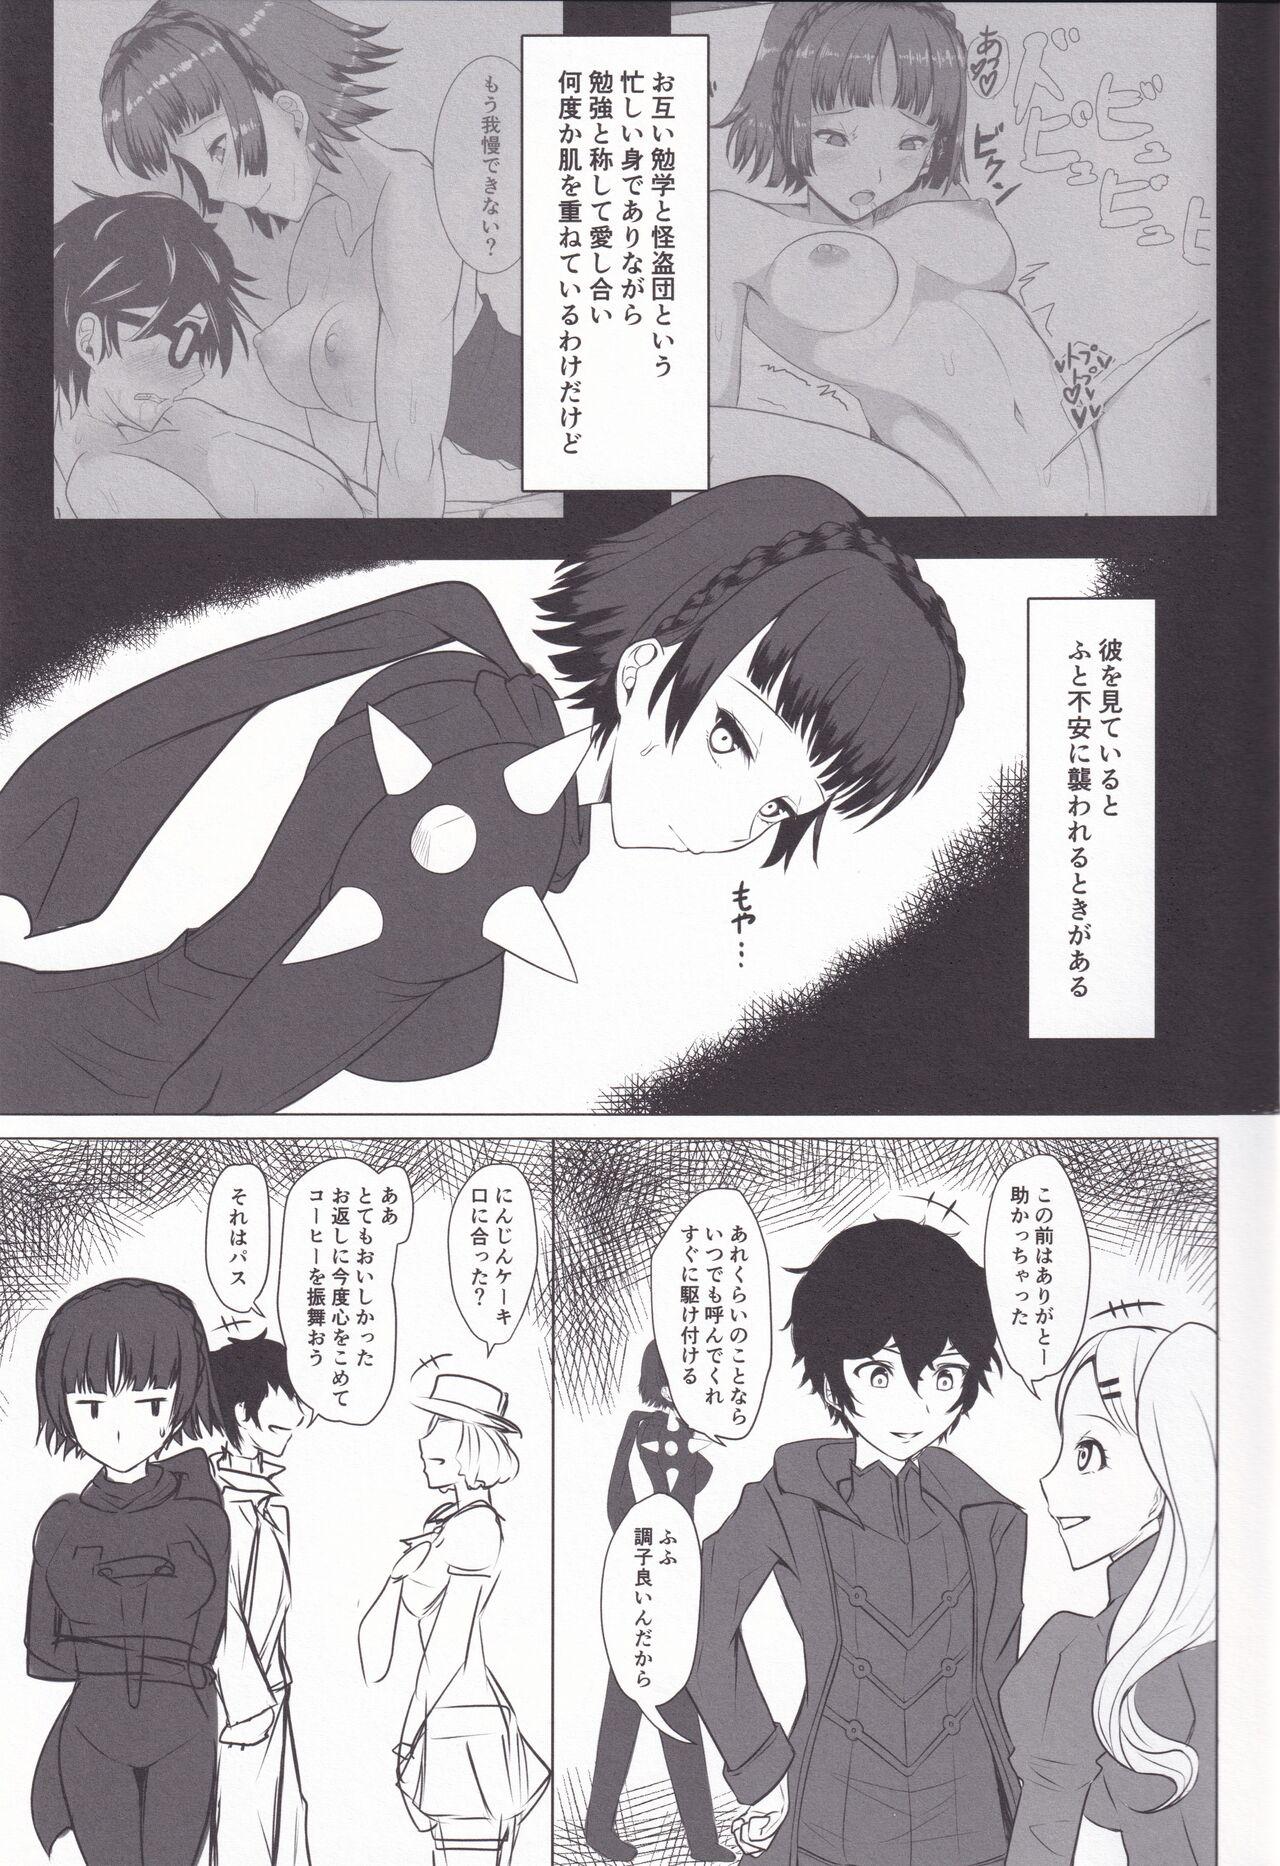 Moms Chiteki de Etchi na Seito Kaichou - Persona 5 Matures - Page 3